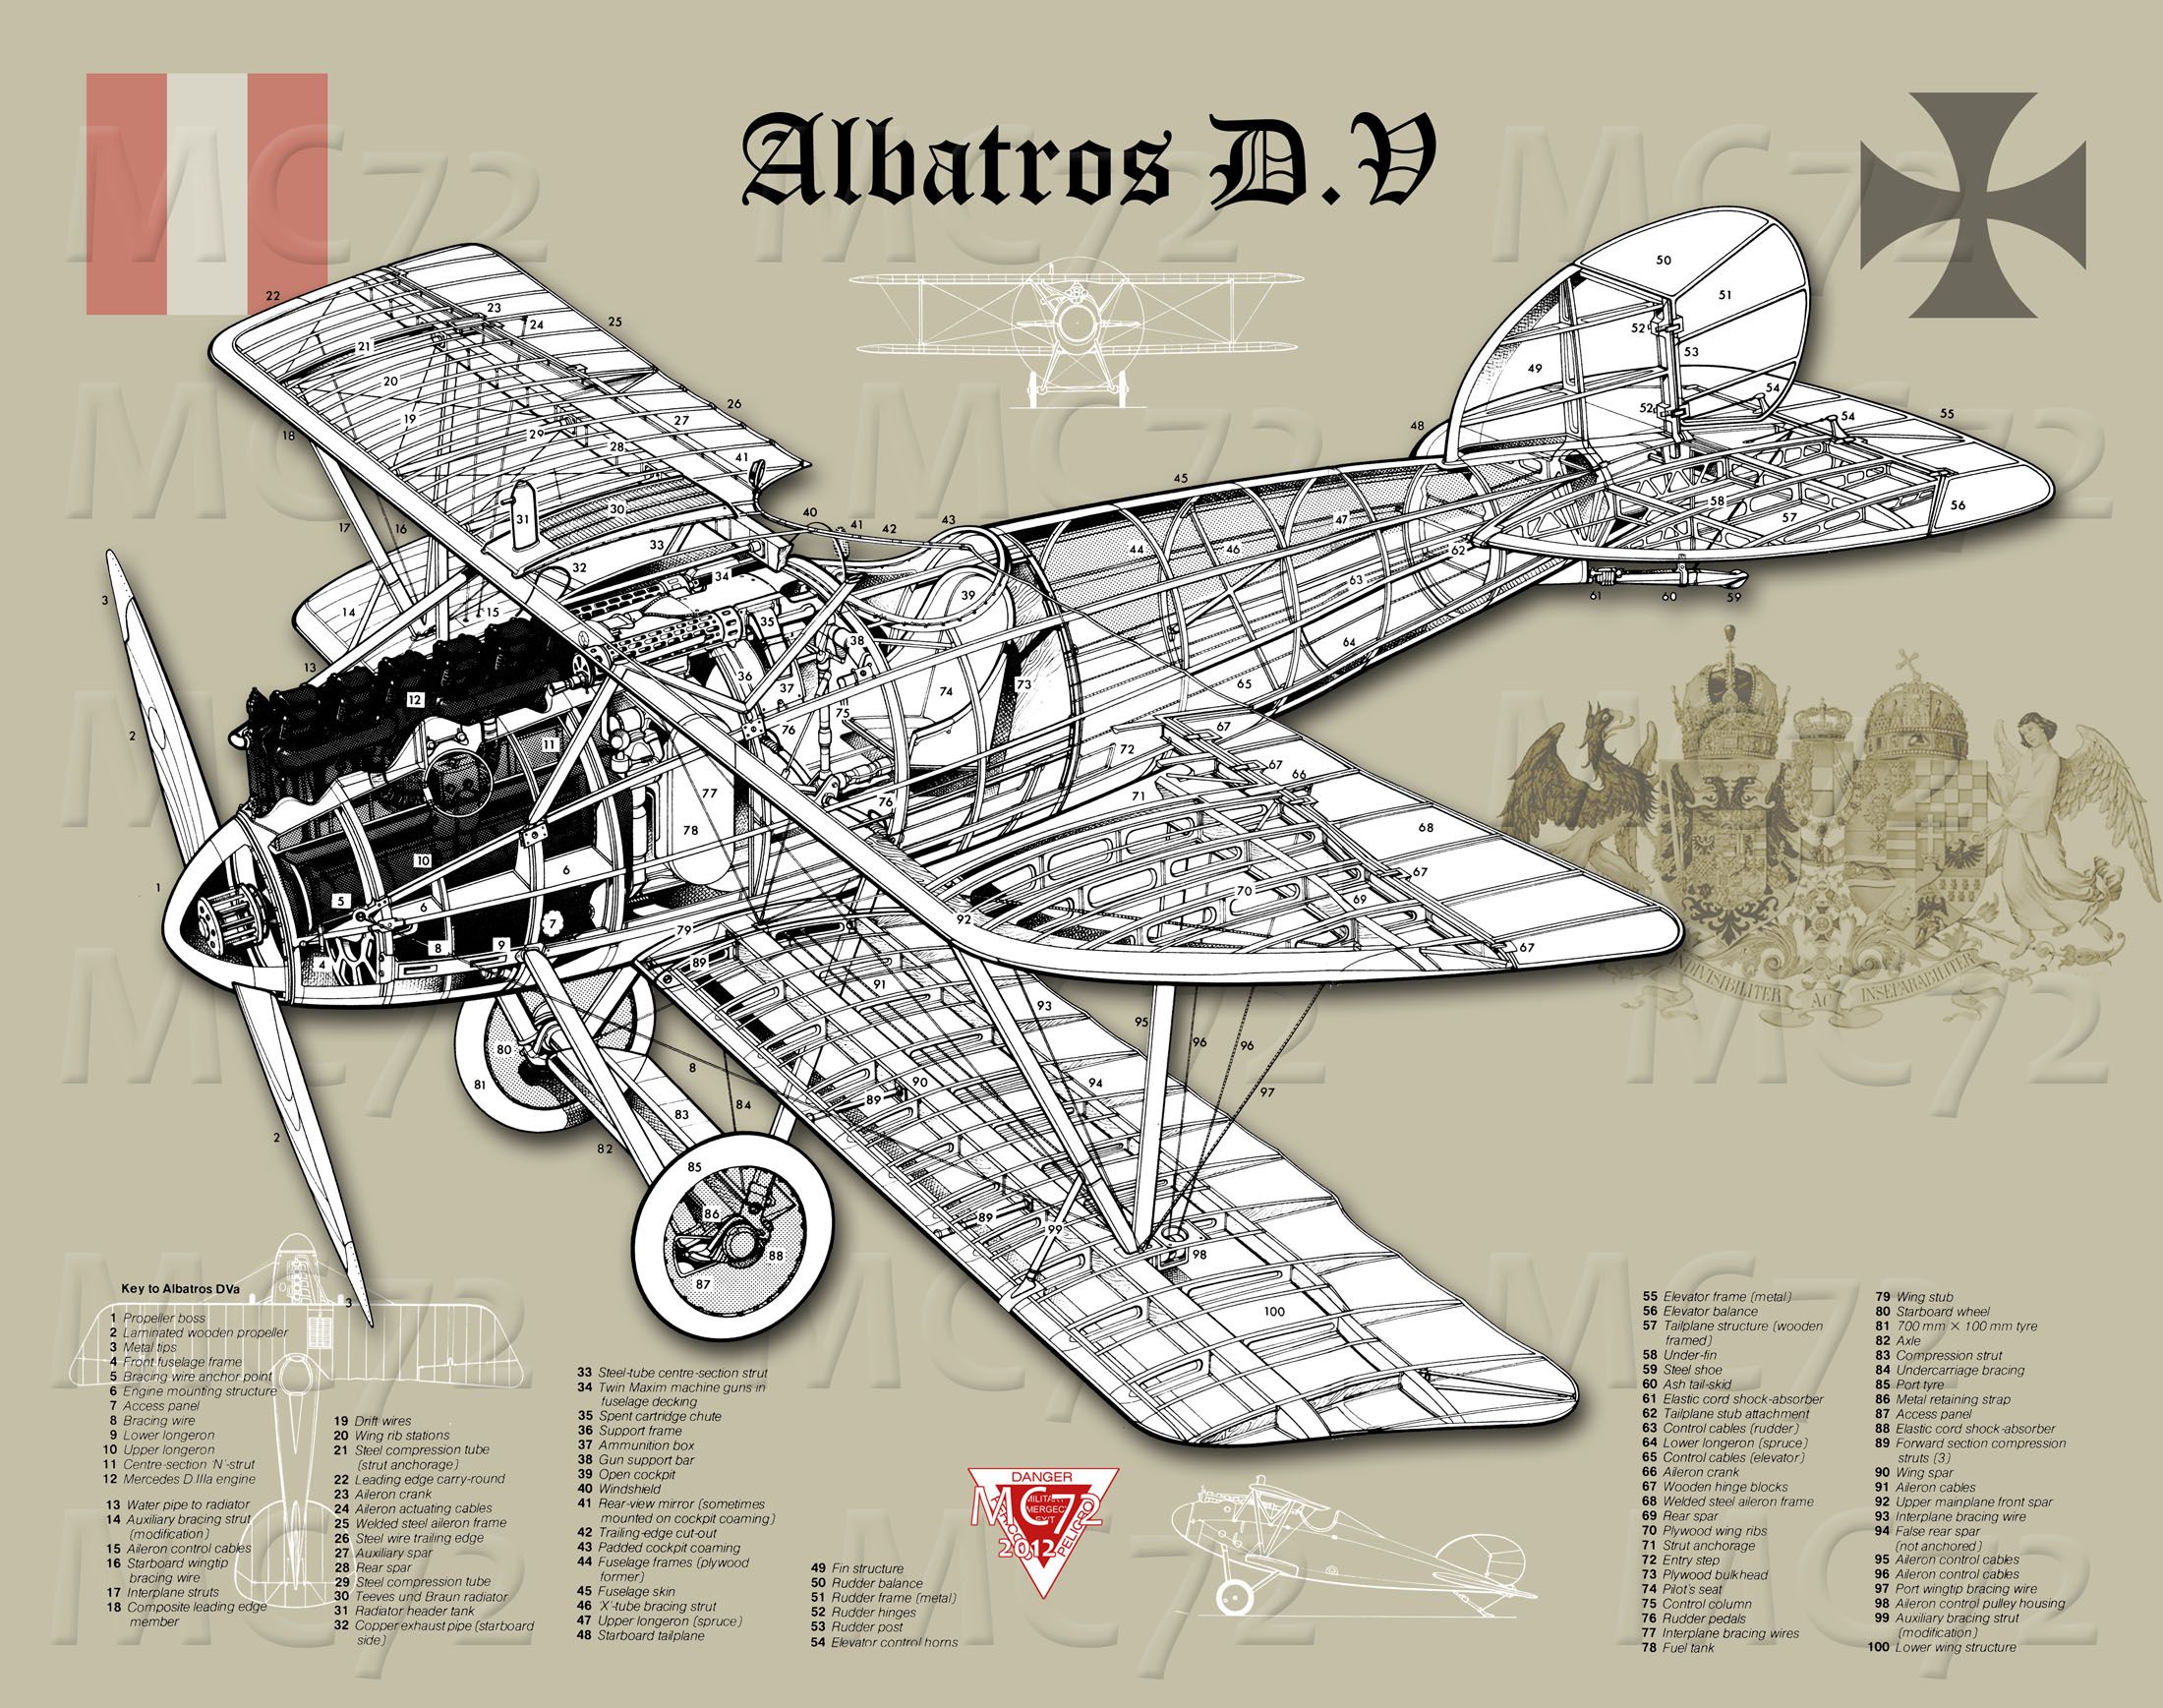 Albatros_D_V1